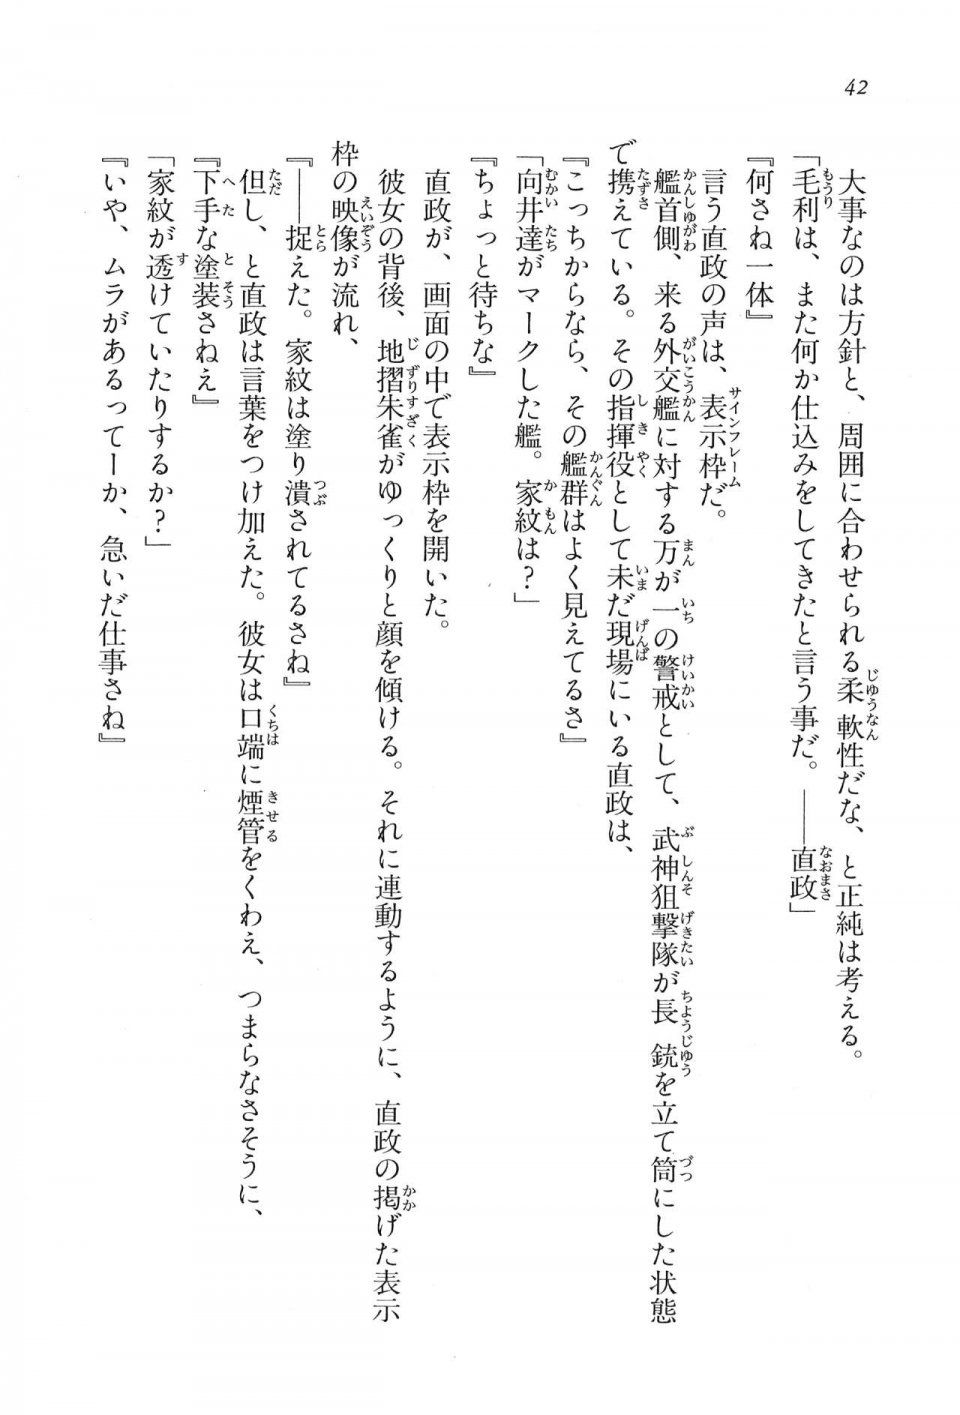 Kyoukai Senjou no Horizon LN Vol 16(7A) - Photo #42